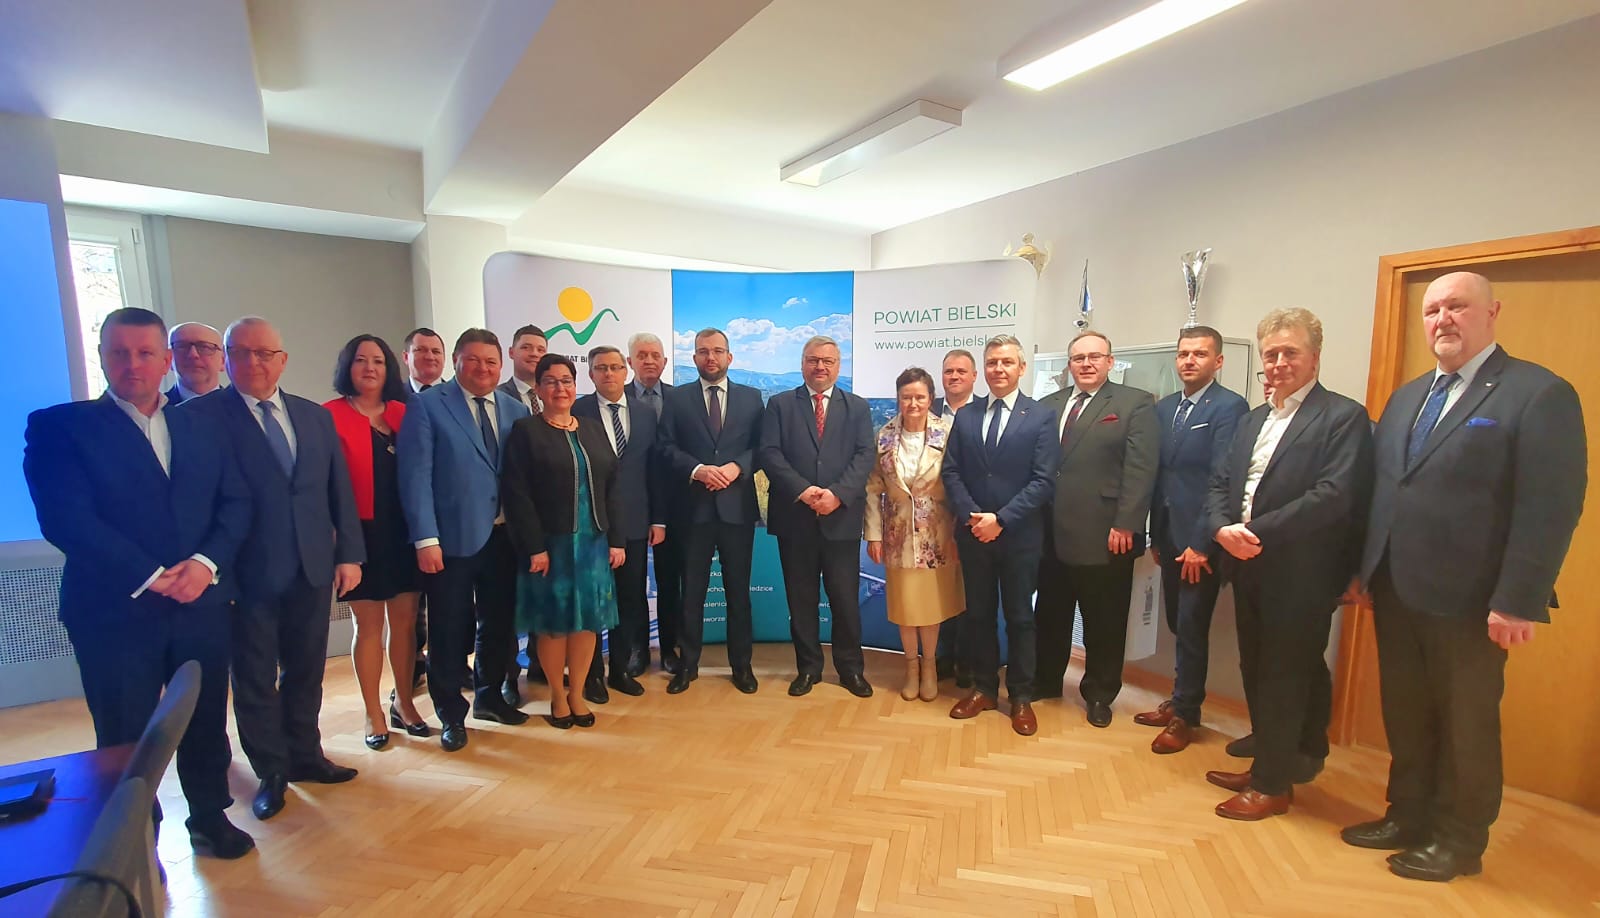 Grupowe zdjęcie samorządowców naszego regionu z posłami, ministrem i władzami województwa śląskiego.